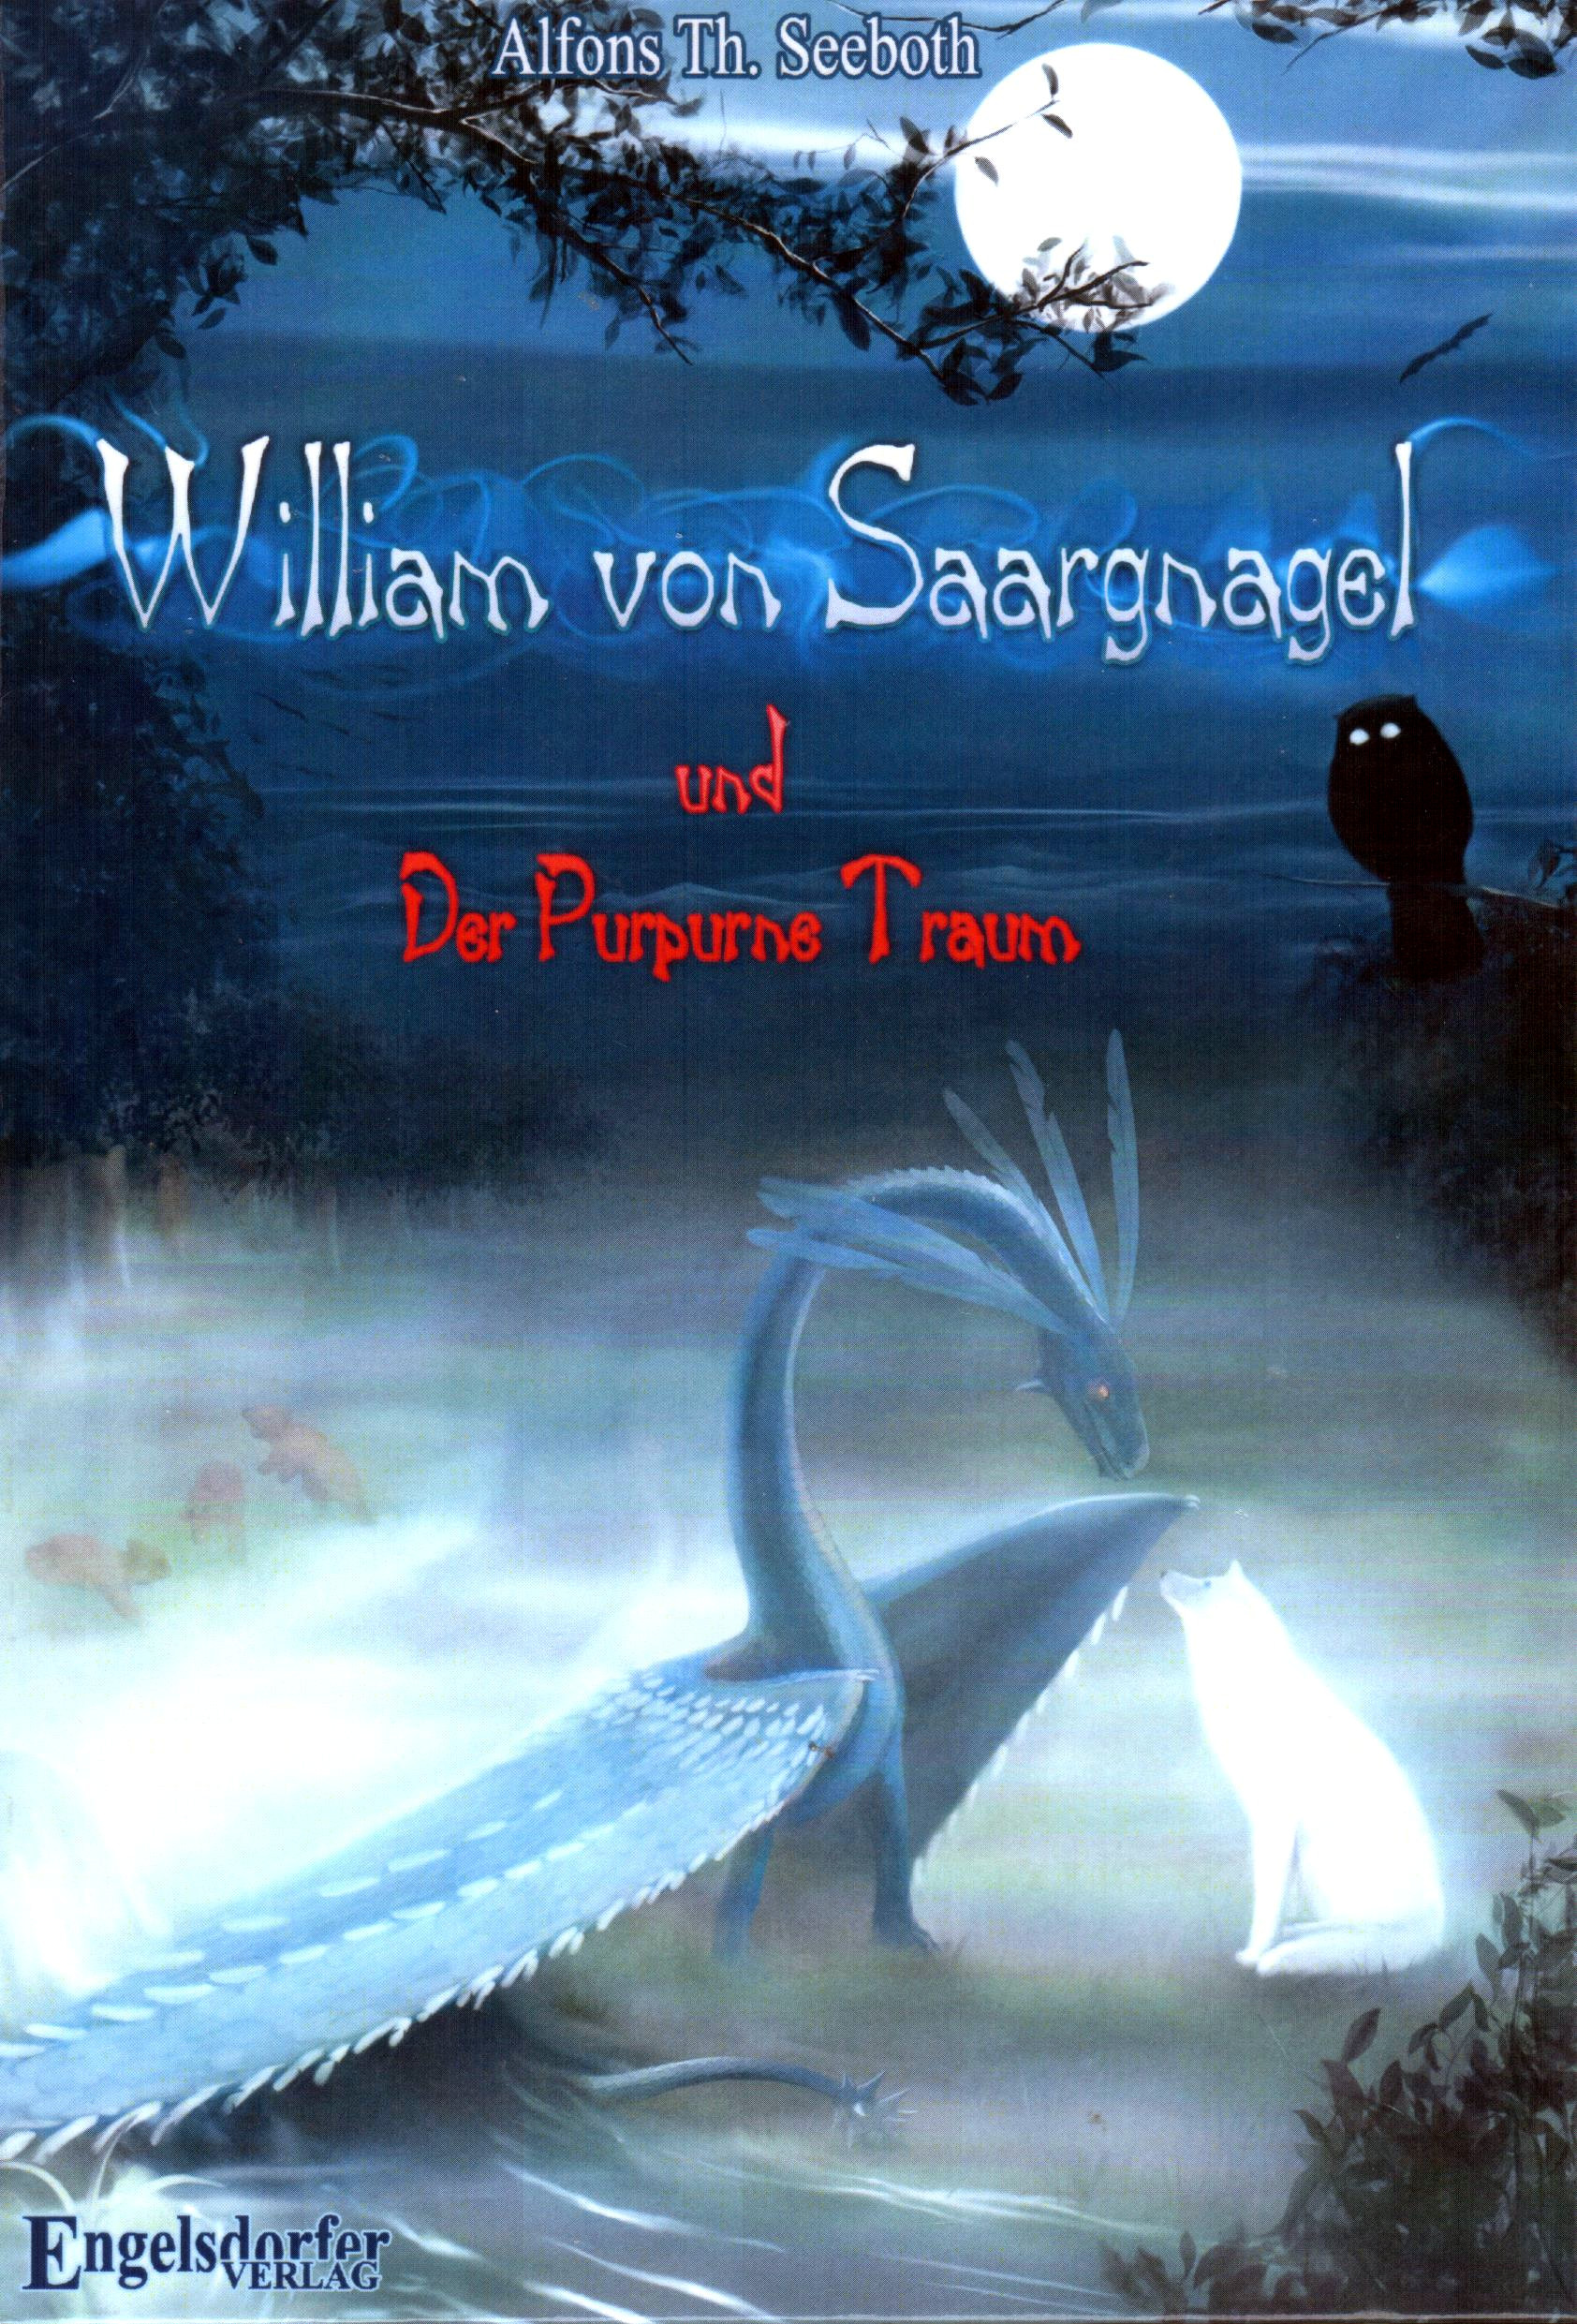 William von Saargnagel (1) und der Purpurne Traum [Engelsdorfer]